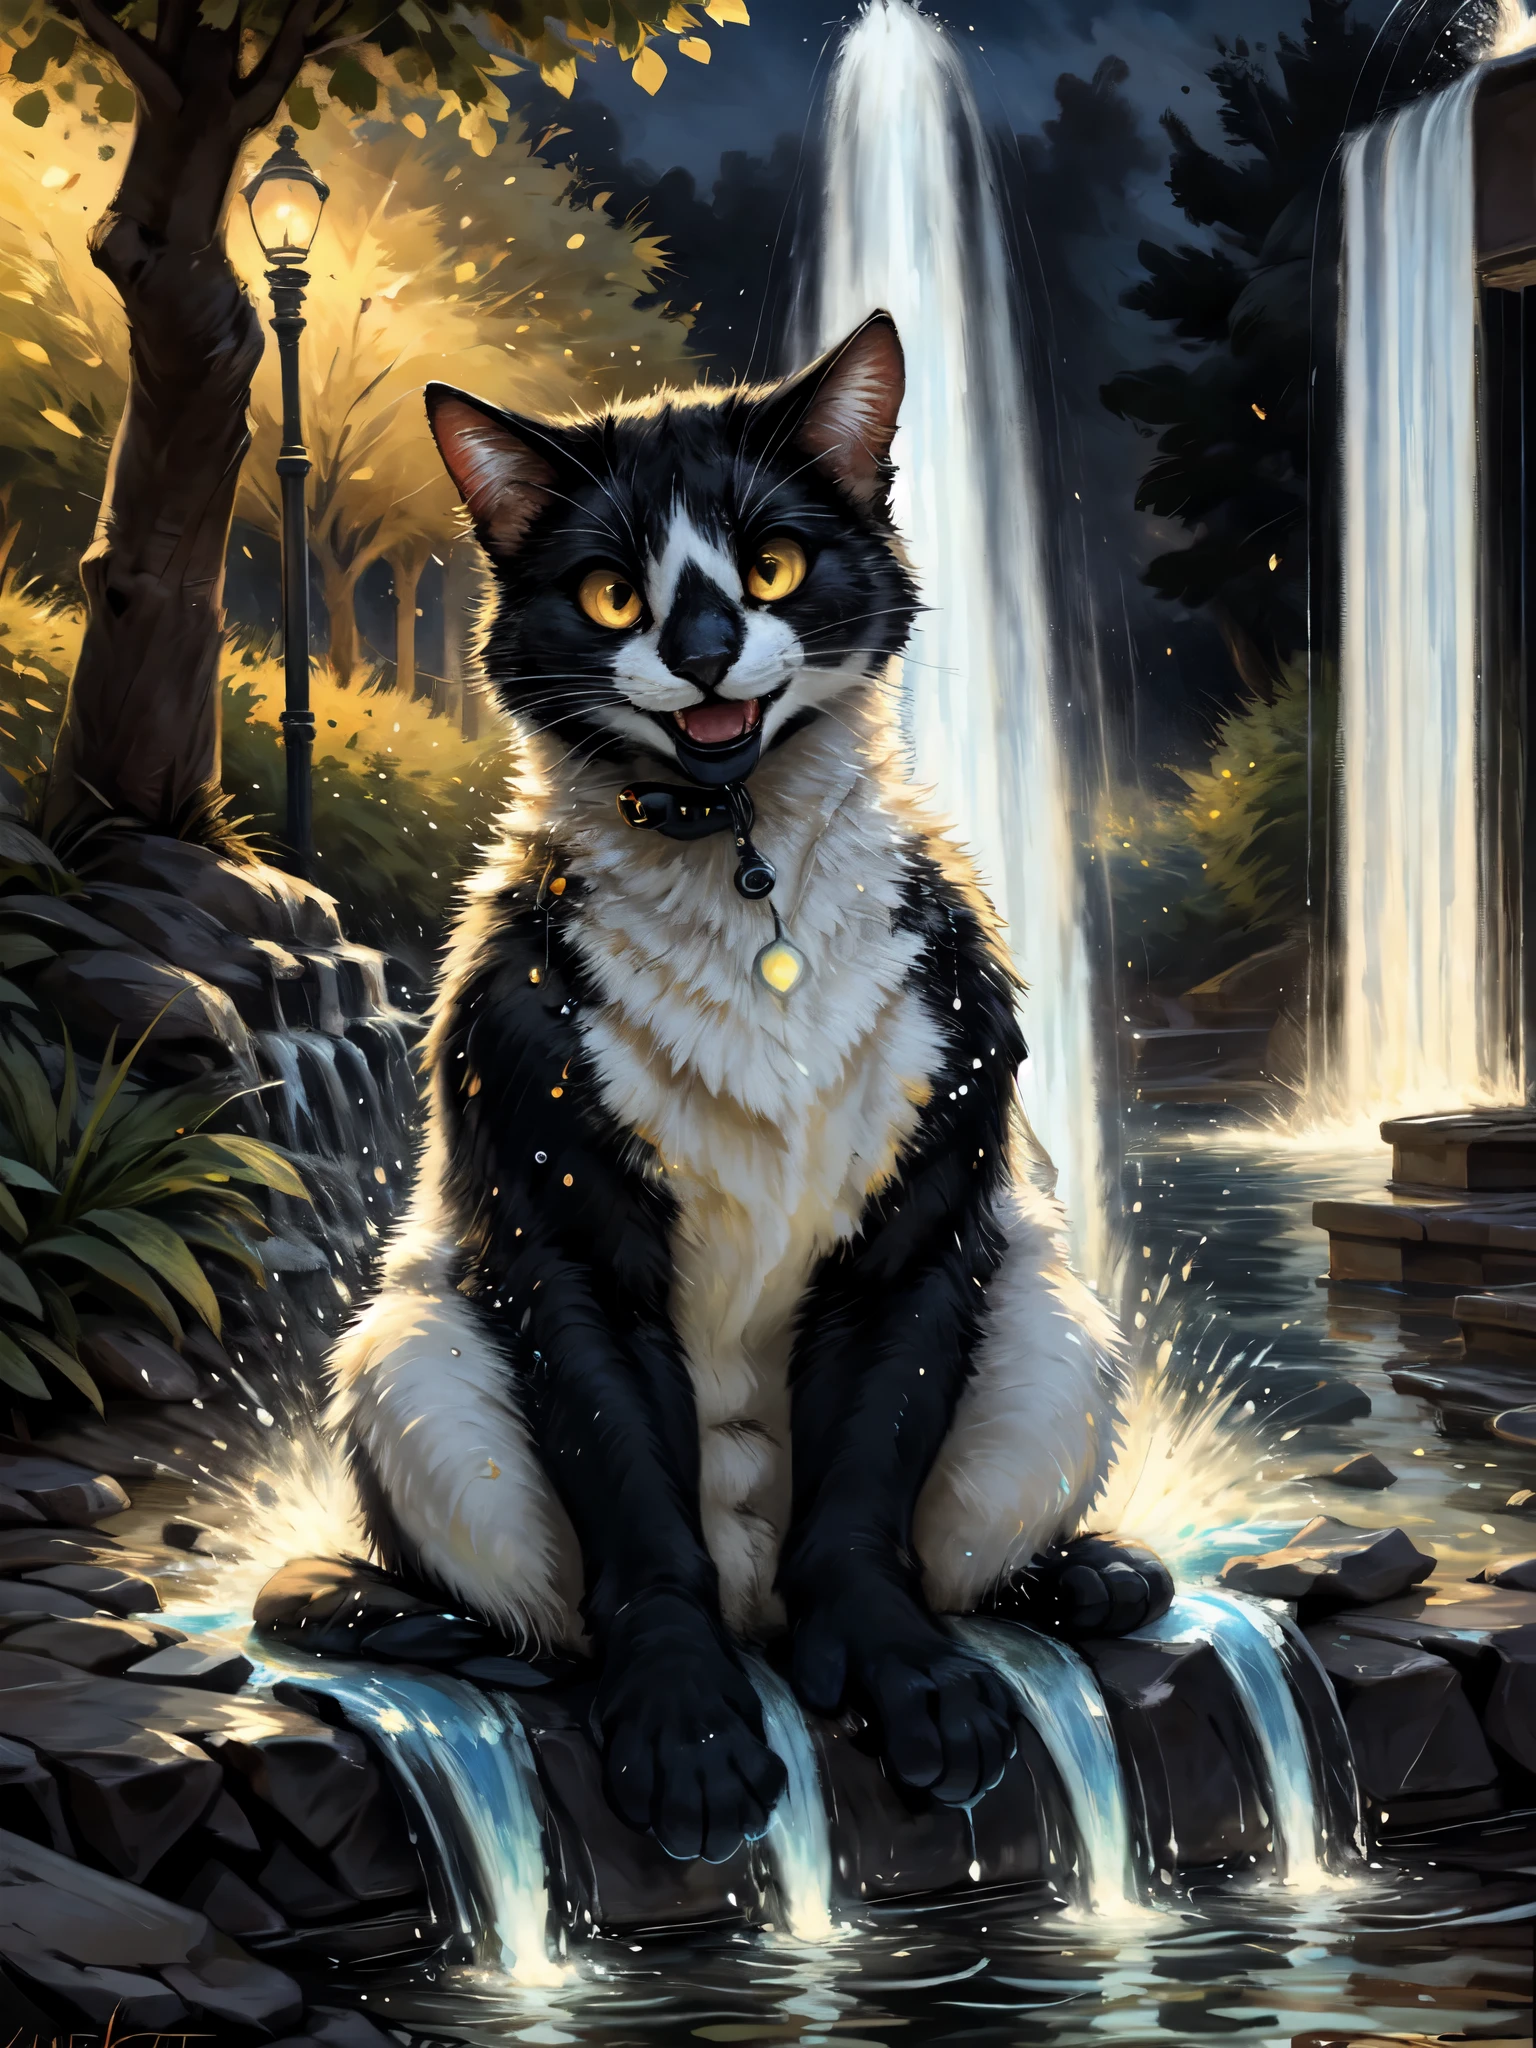 一隻黑白雙色貓, 野性的, 下唇黑色, 黃眼睛, 可愛的, 戶外, 在公園, 坐著, 在神秘的噴泉前, 發光的藍色水從噴泉噴出, 他看起來很高興, 透過肯克特